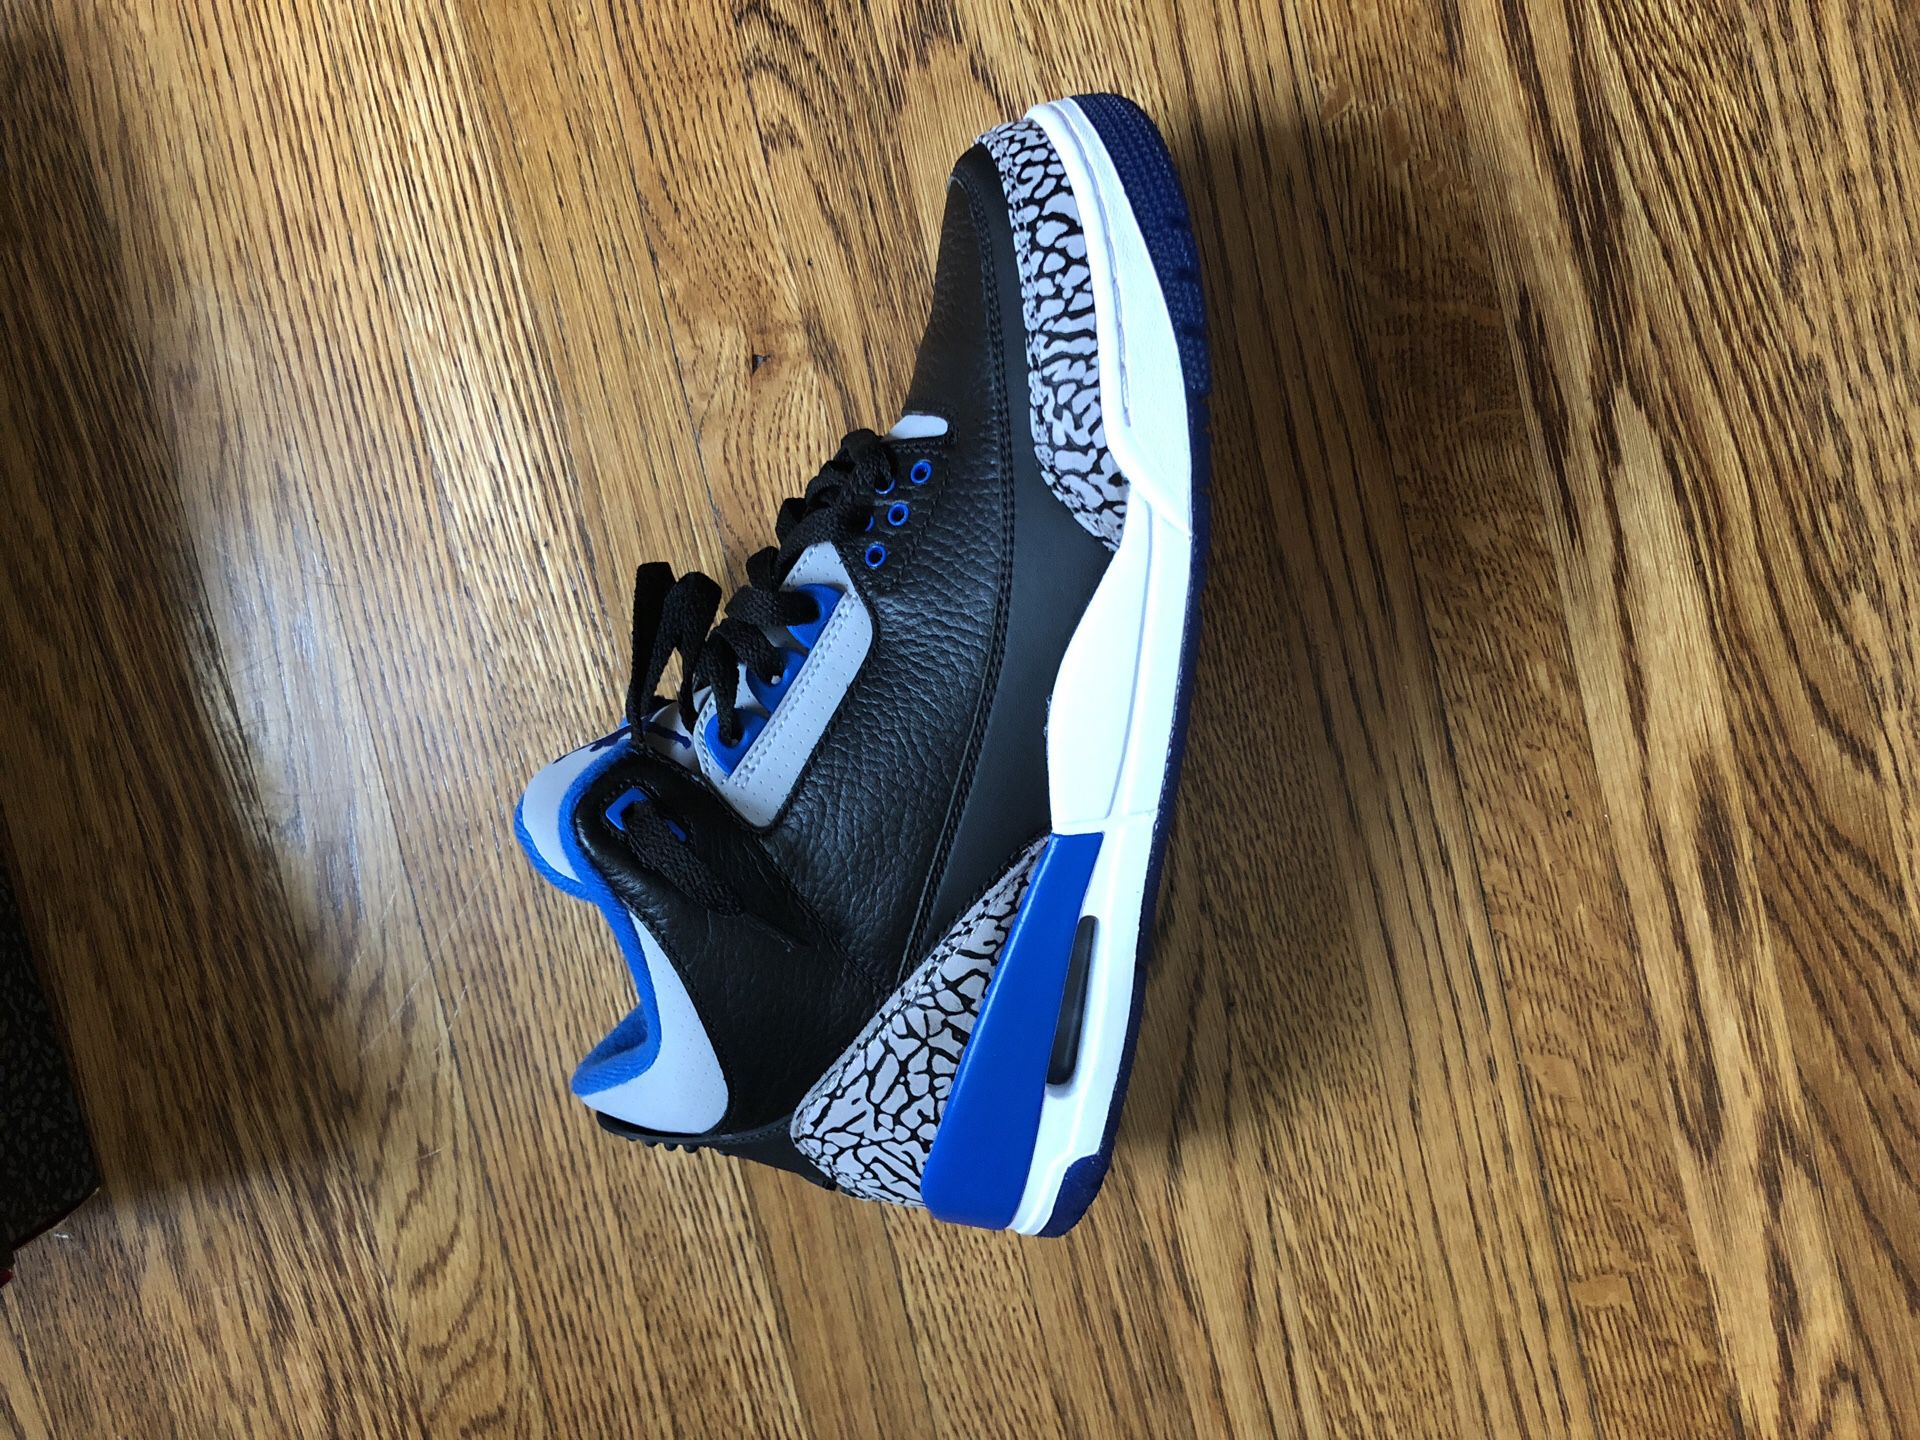 Sport blue Jordan retro 3’s size 9.5 DS